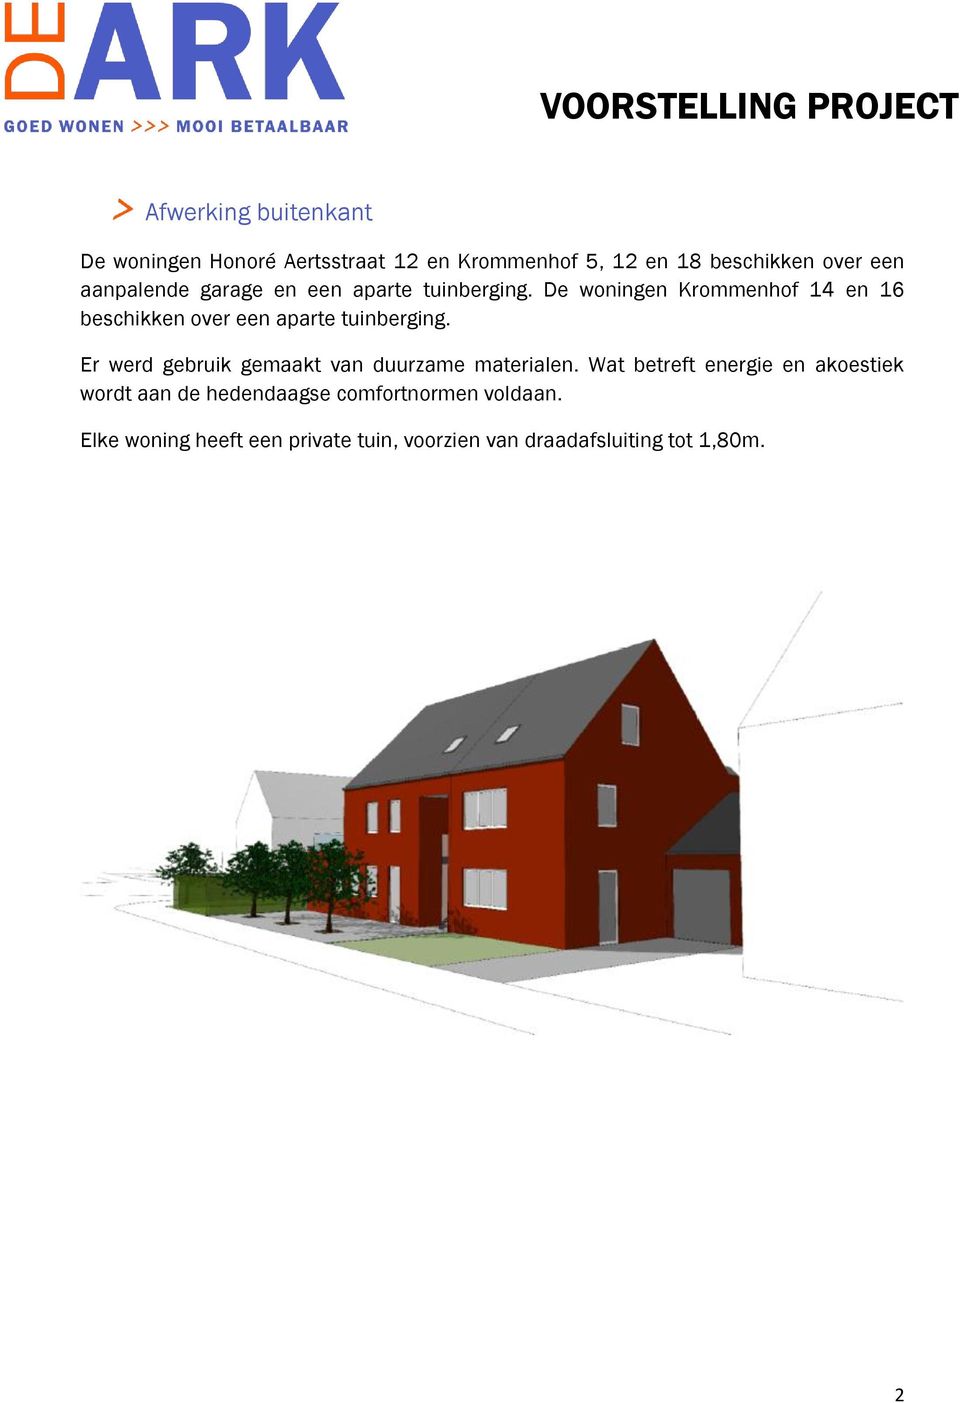 De woningen Krommenhof 14 en 16 beschikken over een aparte tuinberging.